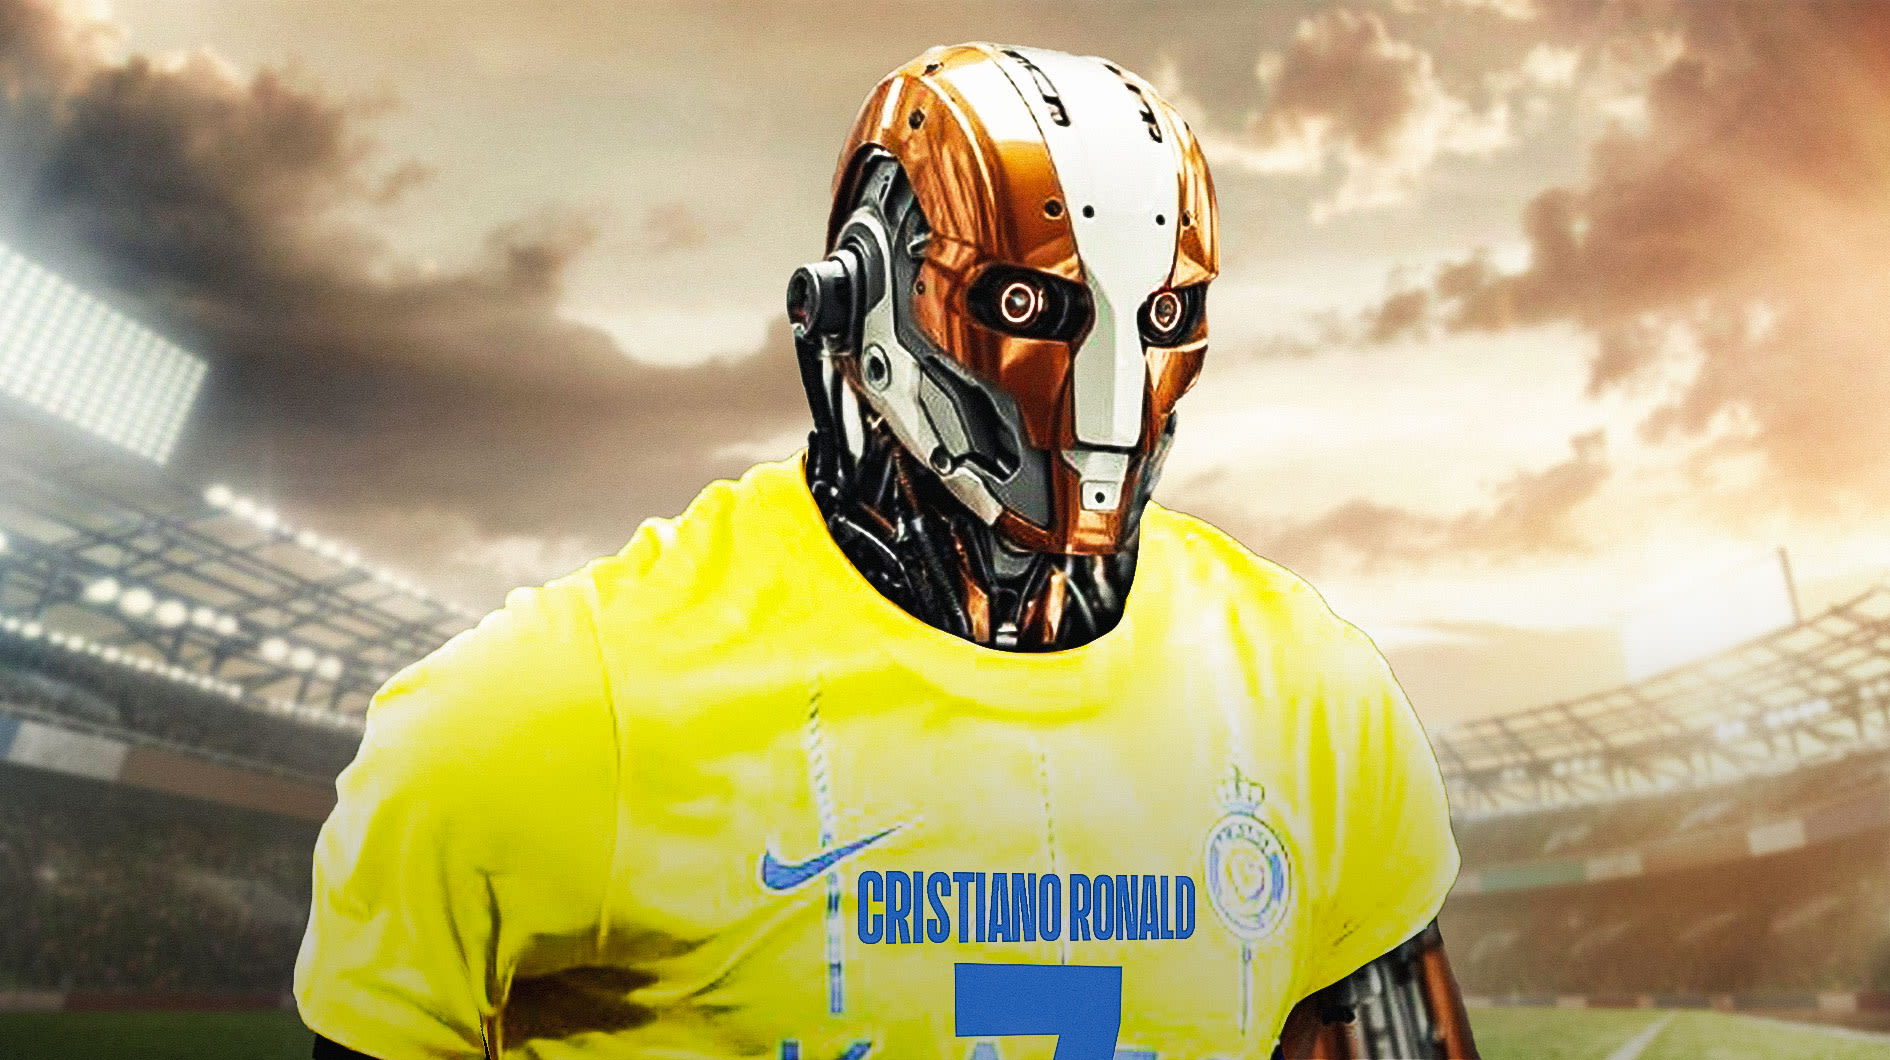 Cristiano Ronaldo inspires an AI Robot